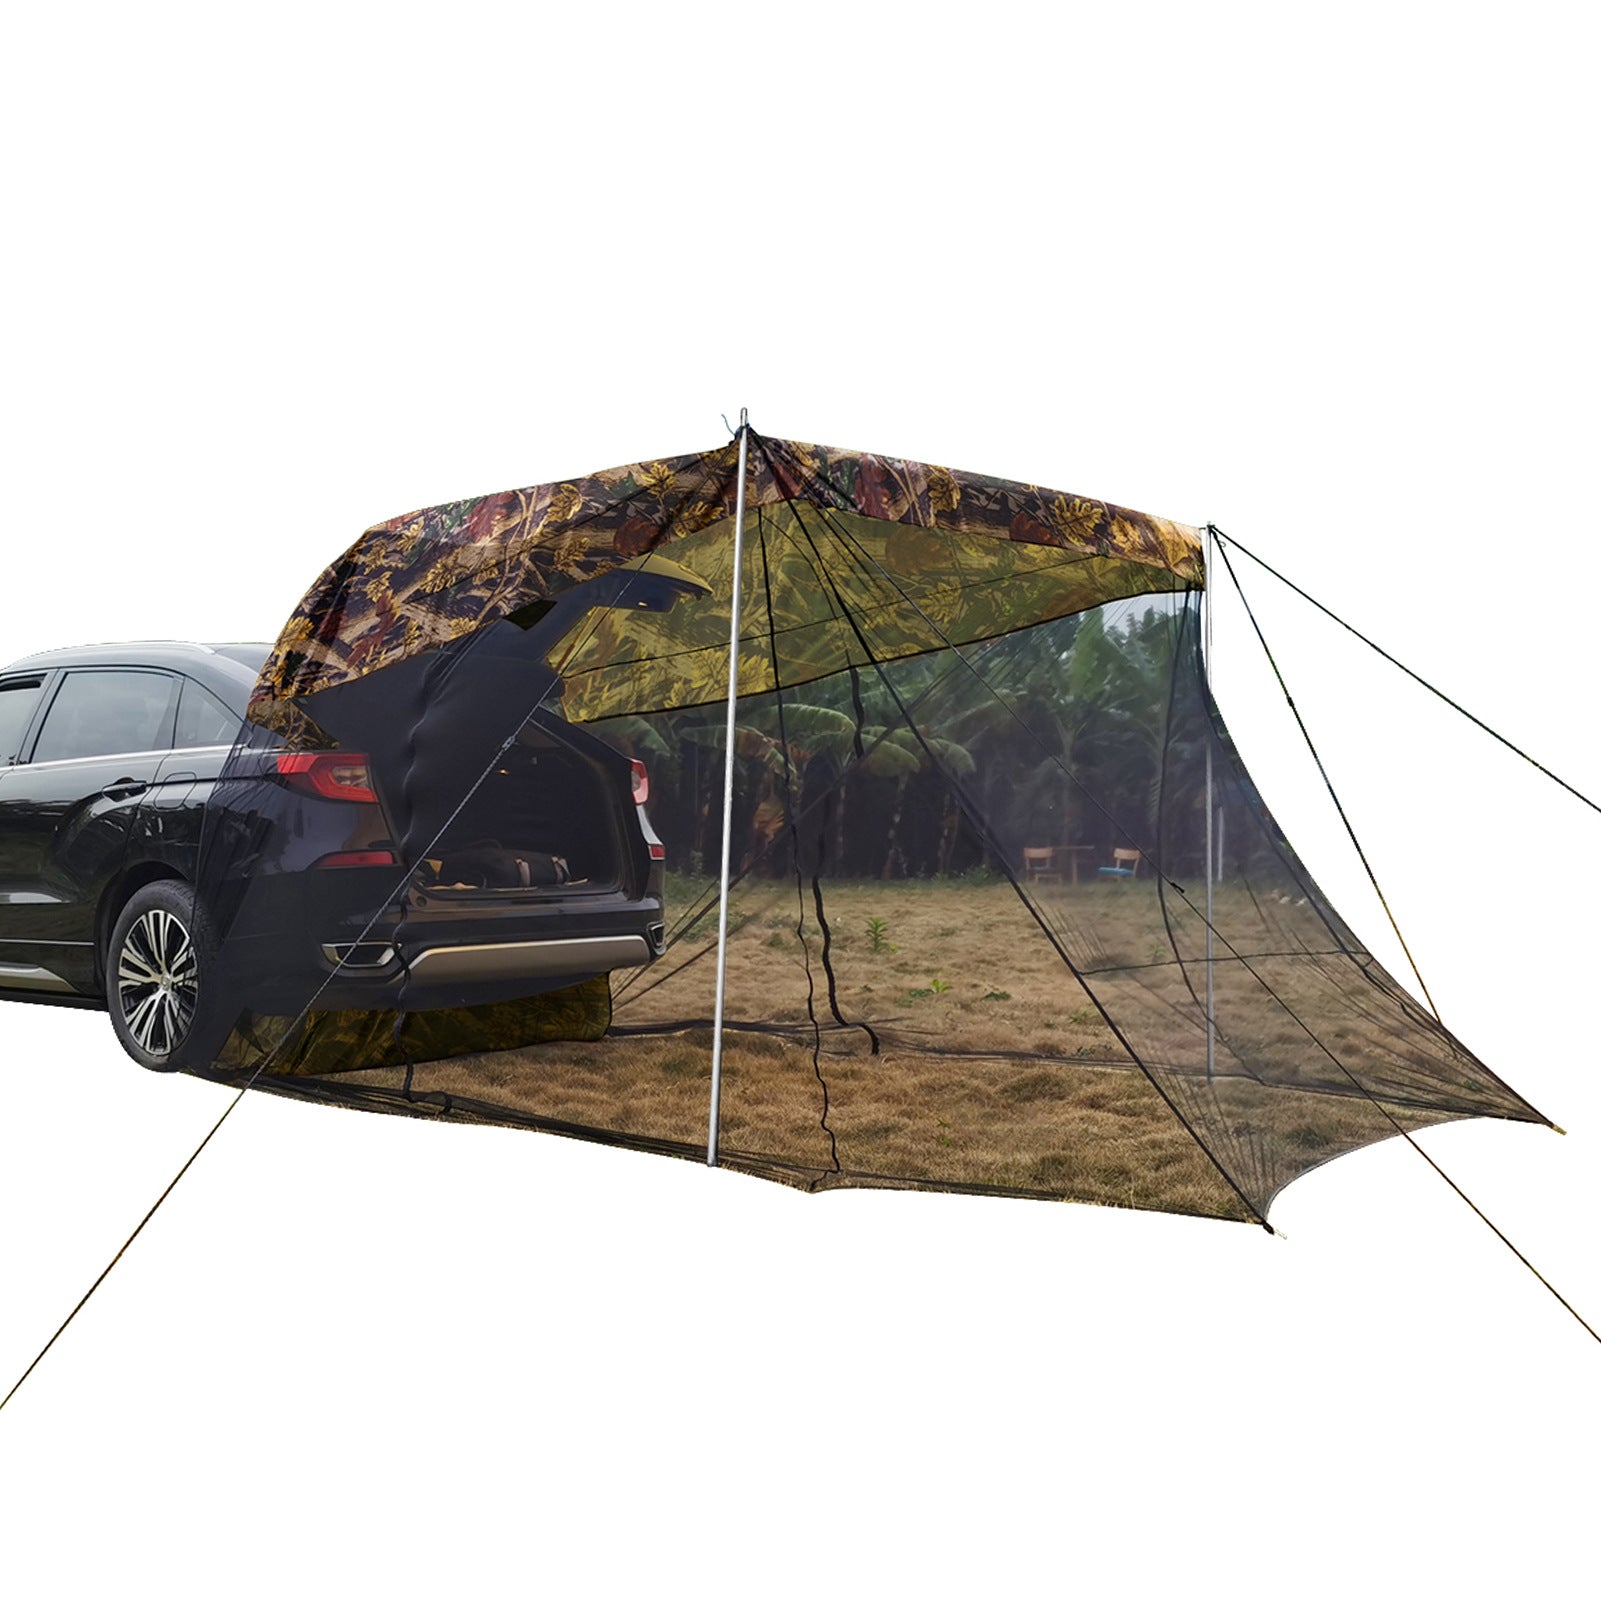 HARDLAND Car Awning Sun Shelter With Mosquito Net